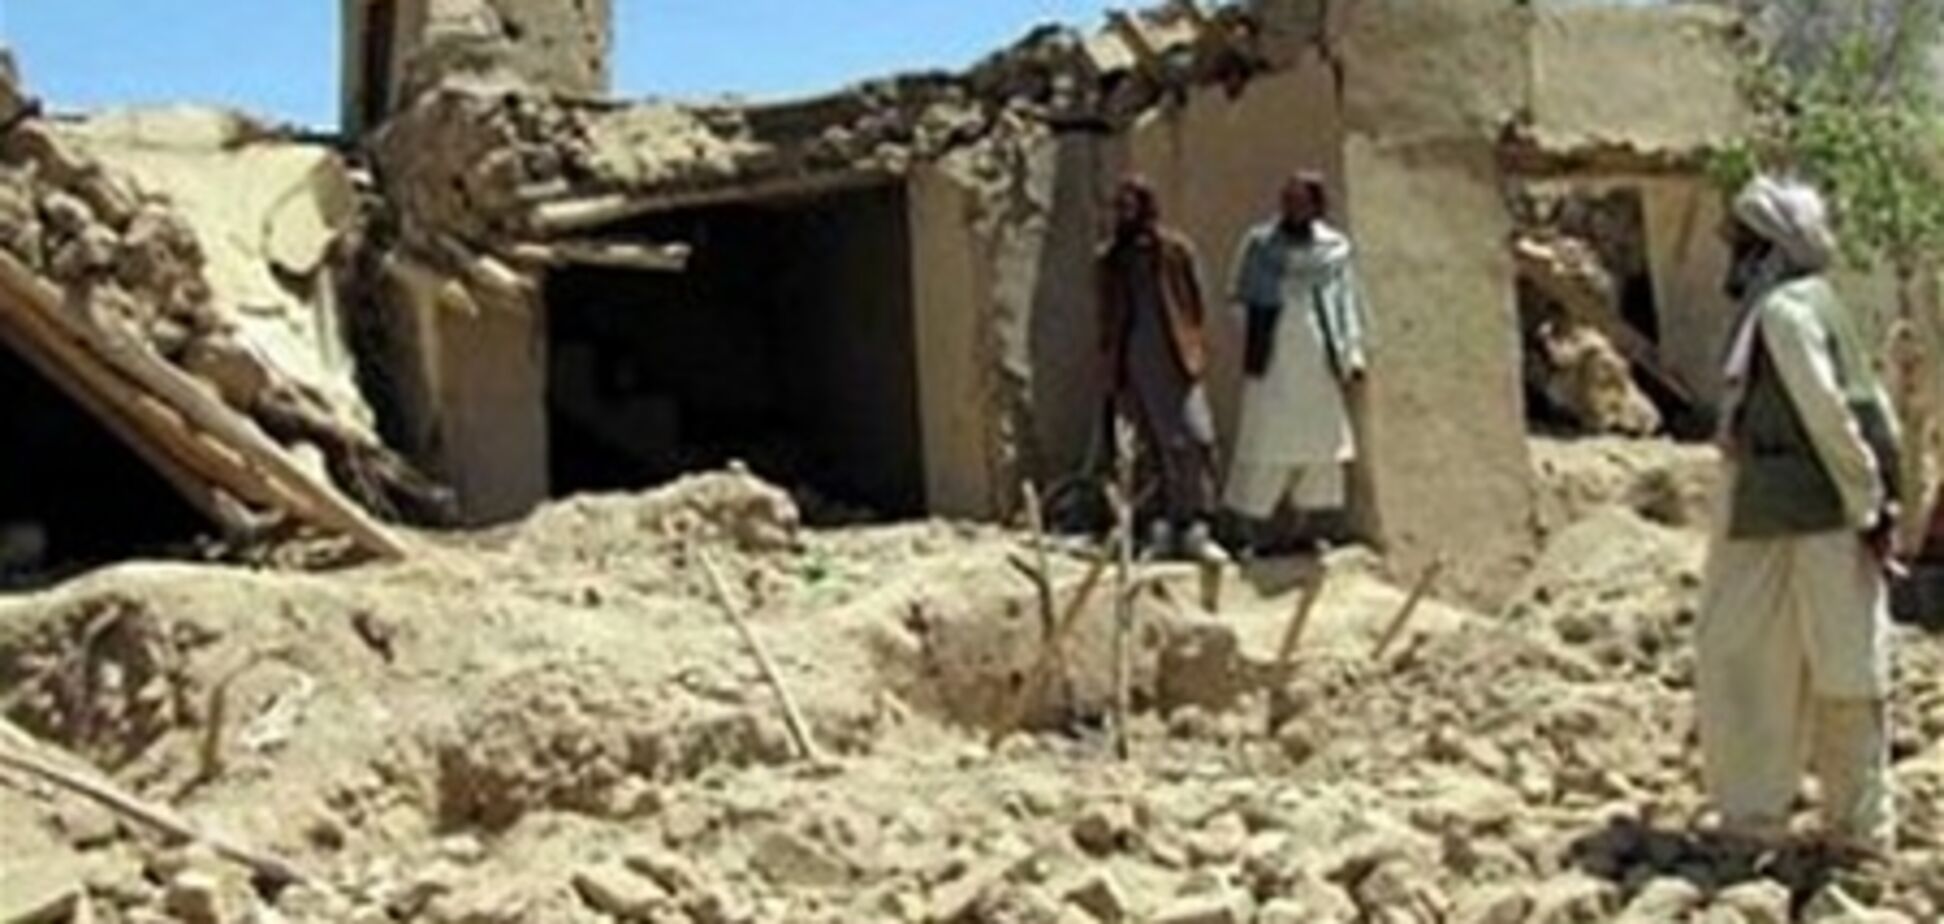 В Афганистане произошло землетрясение